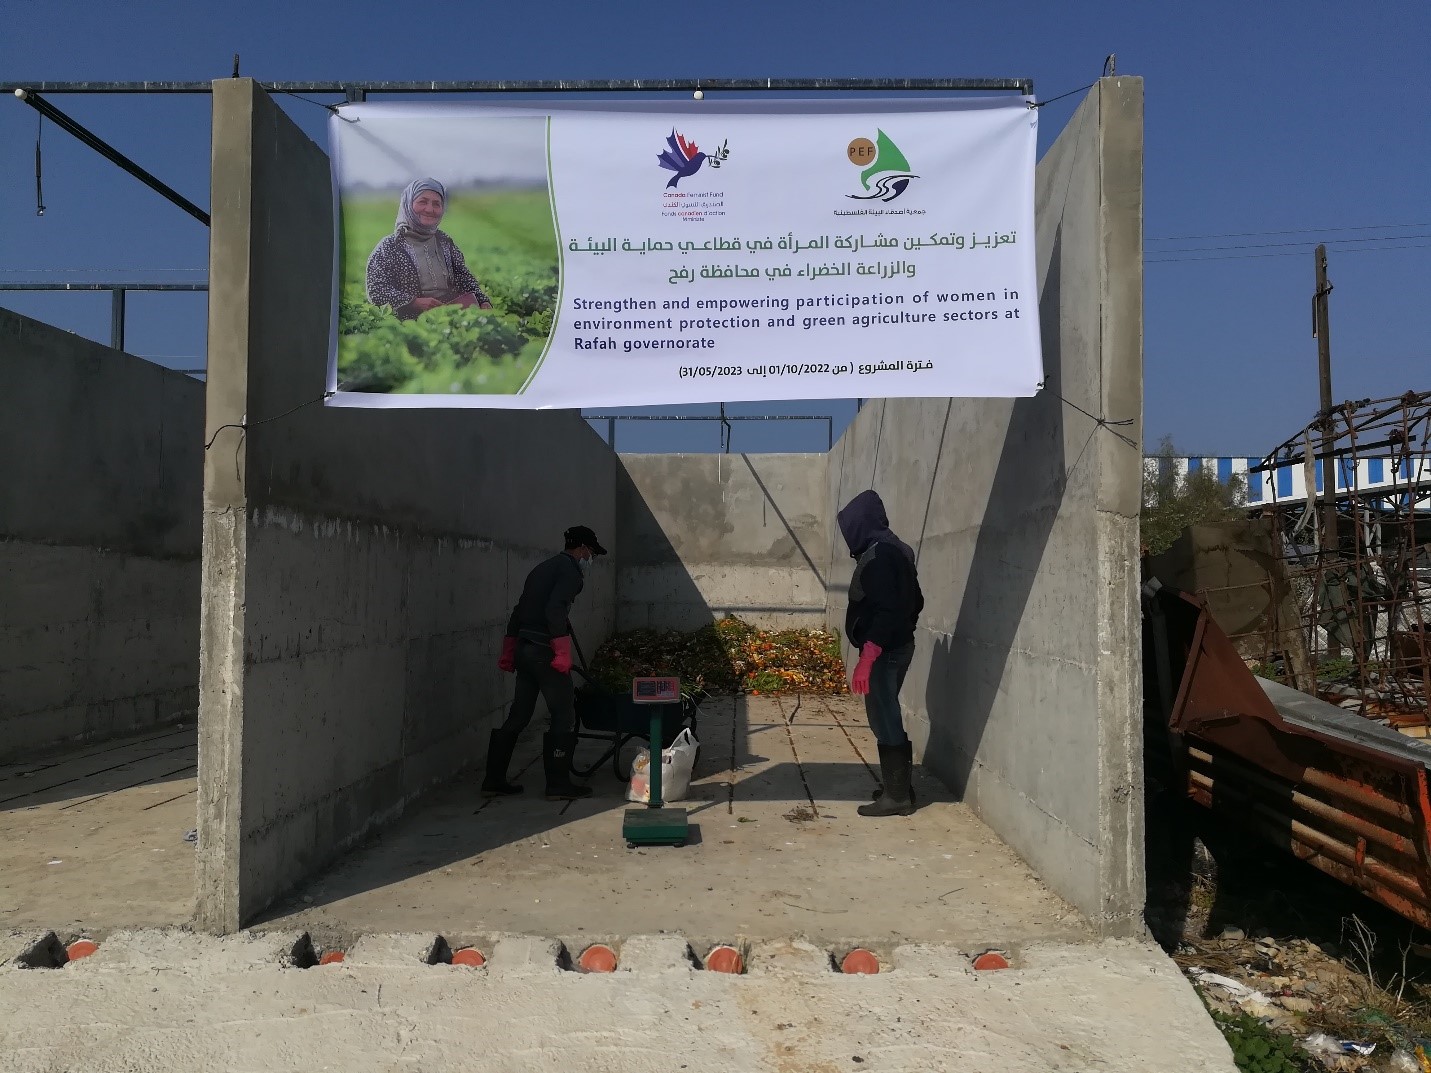 تنفيذ مشروع “تعزيز وتمكين مشاركة المرأة في قطاعي حماية البيئة والزراعة الخضراء في محافظة رفح”.